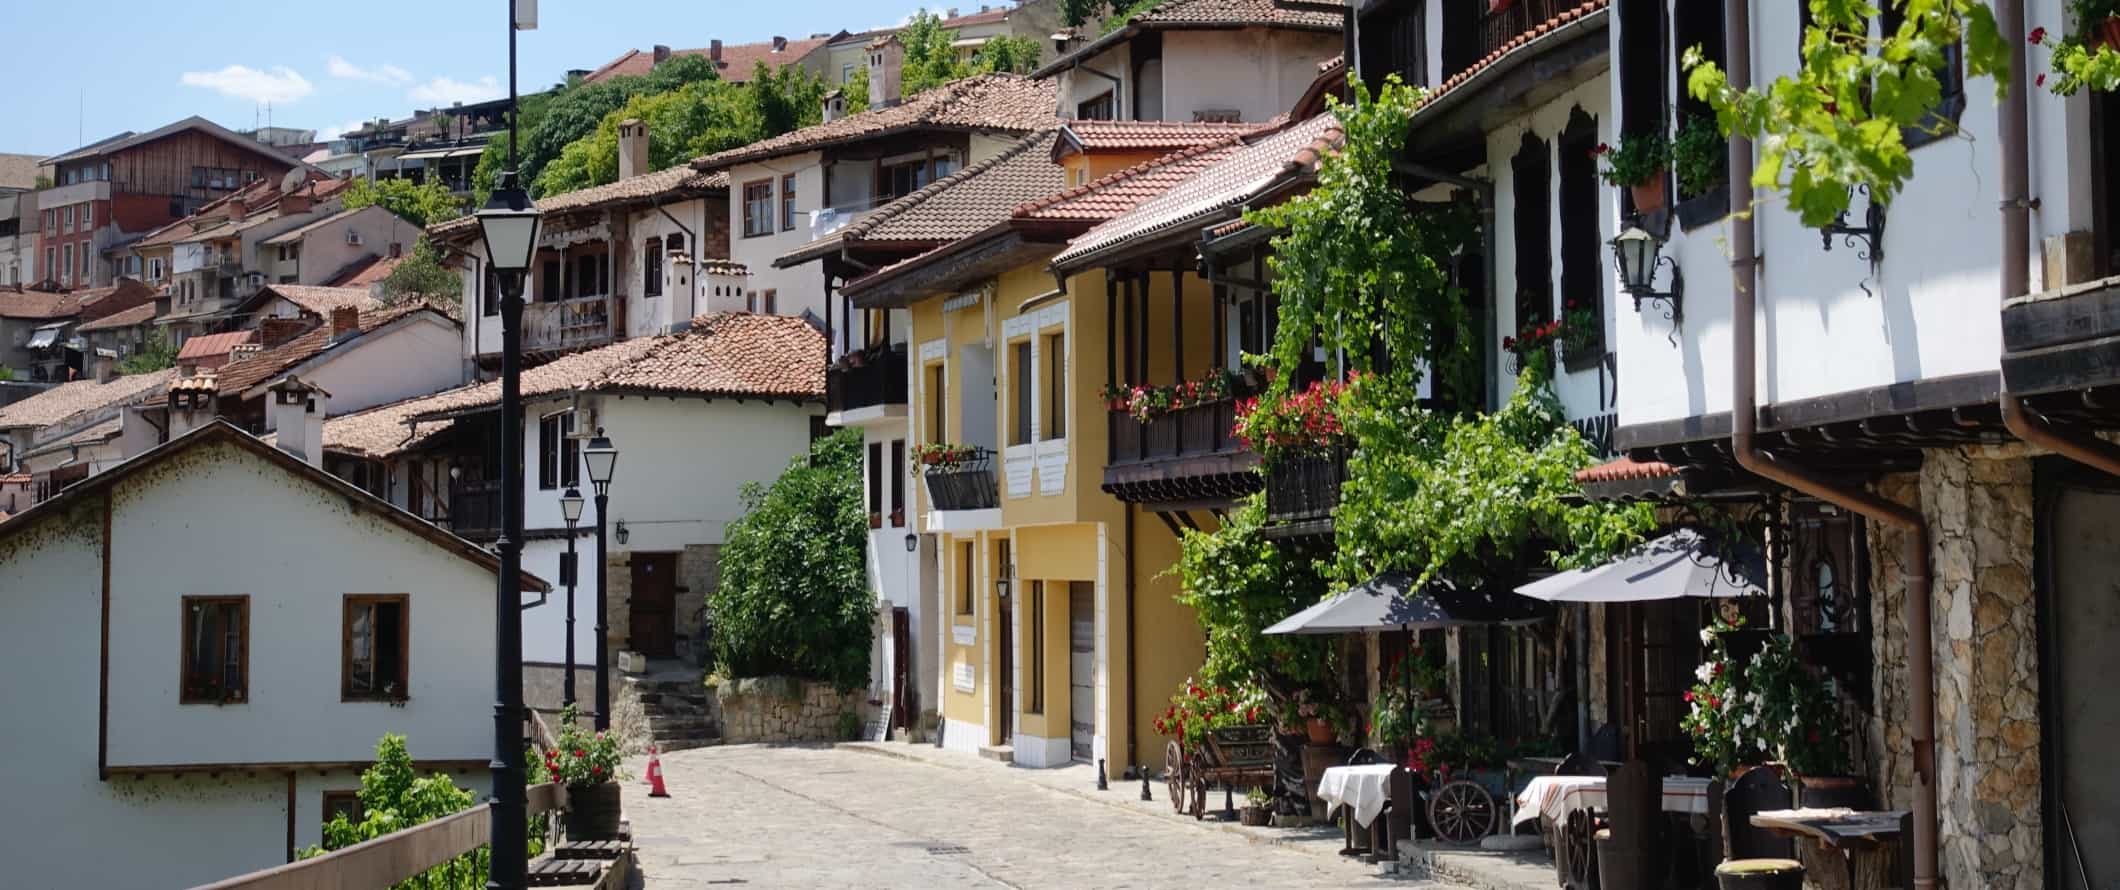 Rua de paralelepípedos com casas tradicionais e restaurantes na cidade velha de Veliko Tarnovo, Bulgária